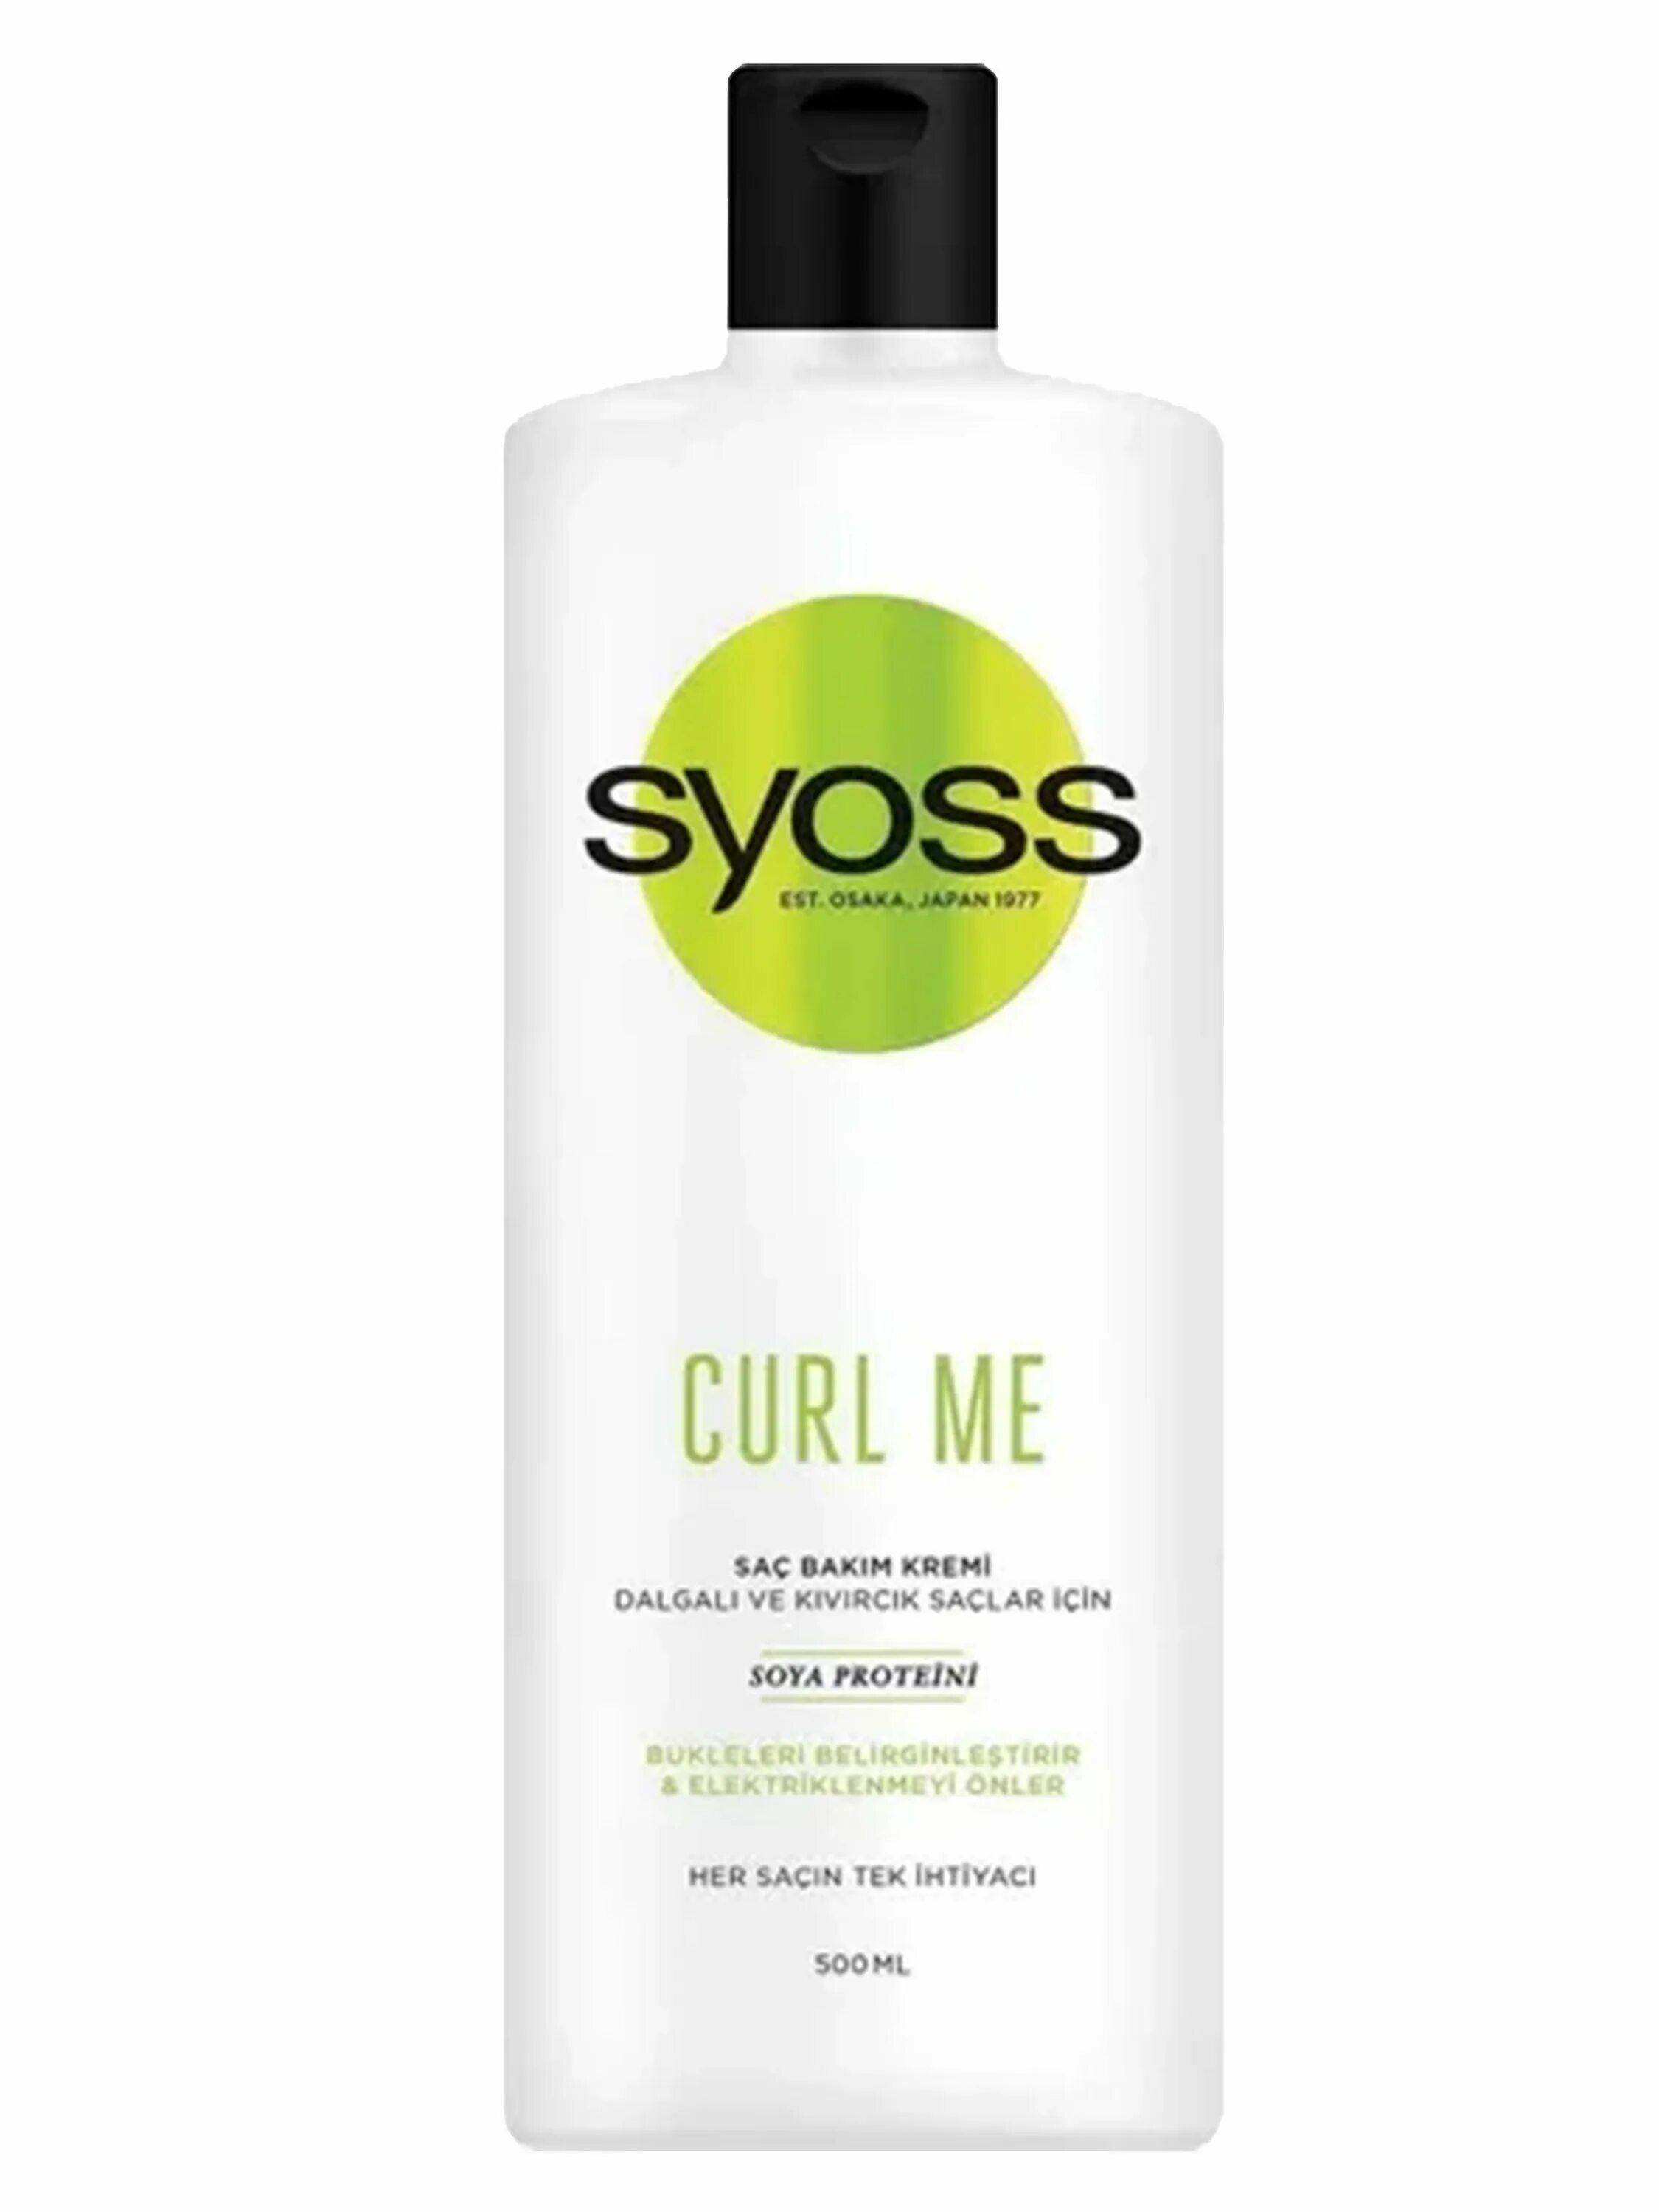 Curl me on. Syoss Curl me. Syoss мусс Curl Control.